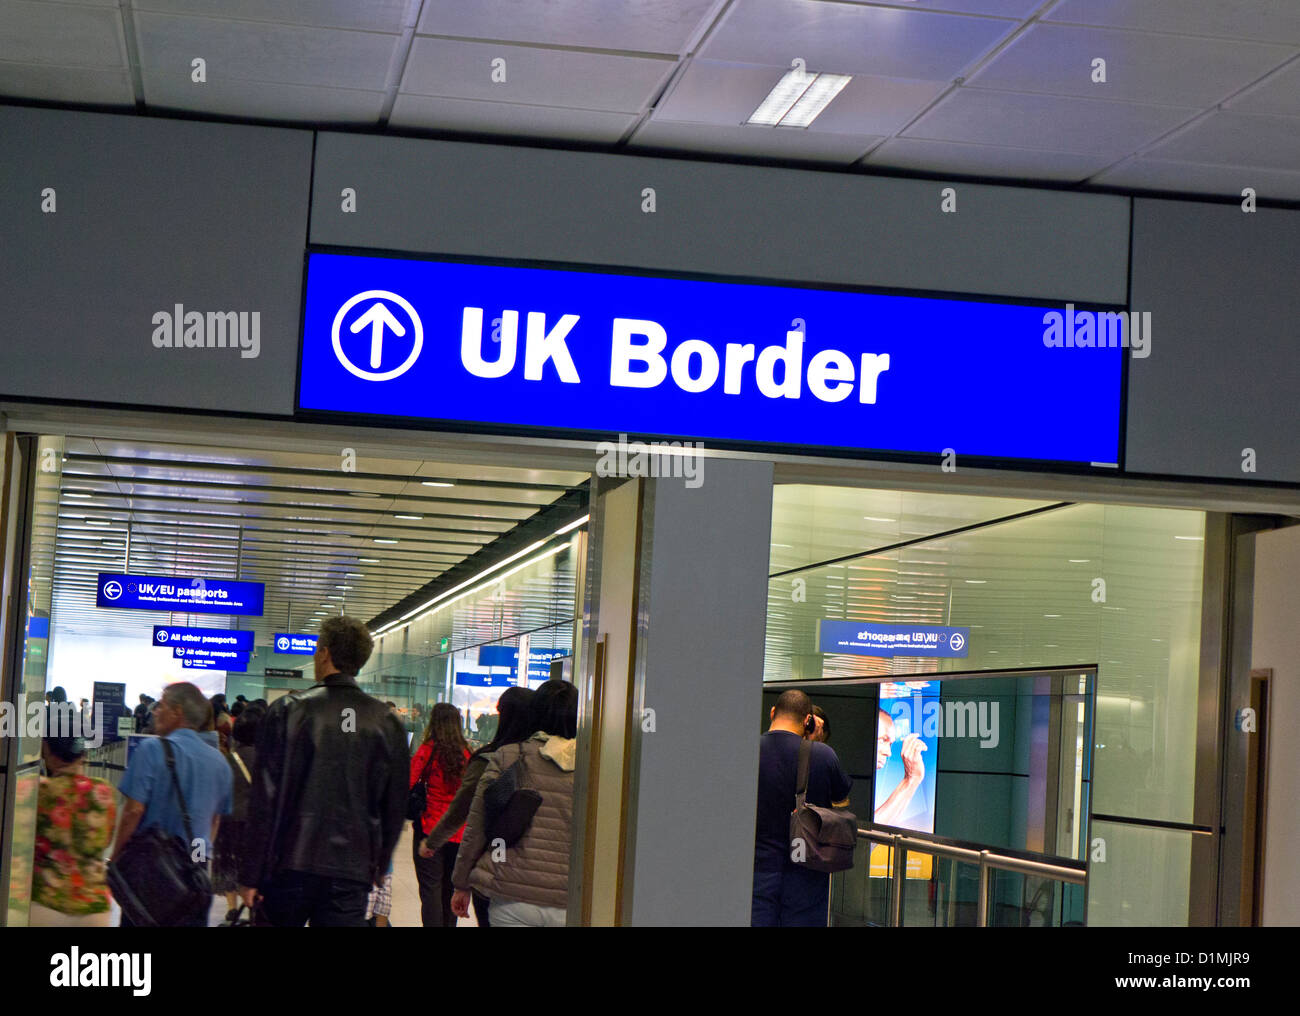 Panneau de signalisation de la zone de contrôle des passeports du contrôle des frontières du Royaume-Uni pour les arrivées Passagers arrivant au terminal de l'aéroport de Londres Heathrow 3 Royaume-Uni Banque D'Images